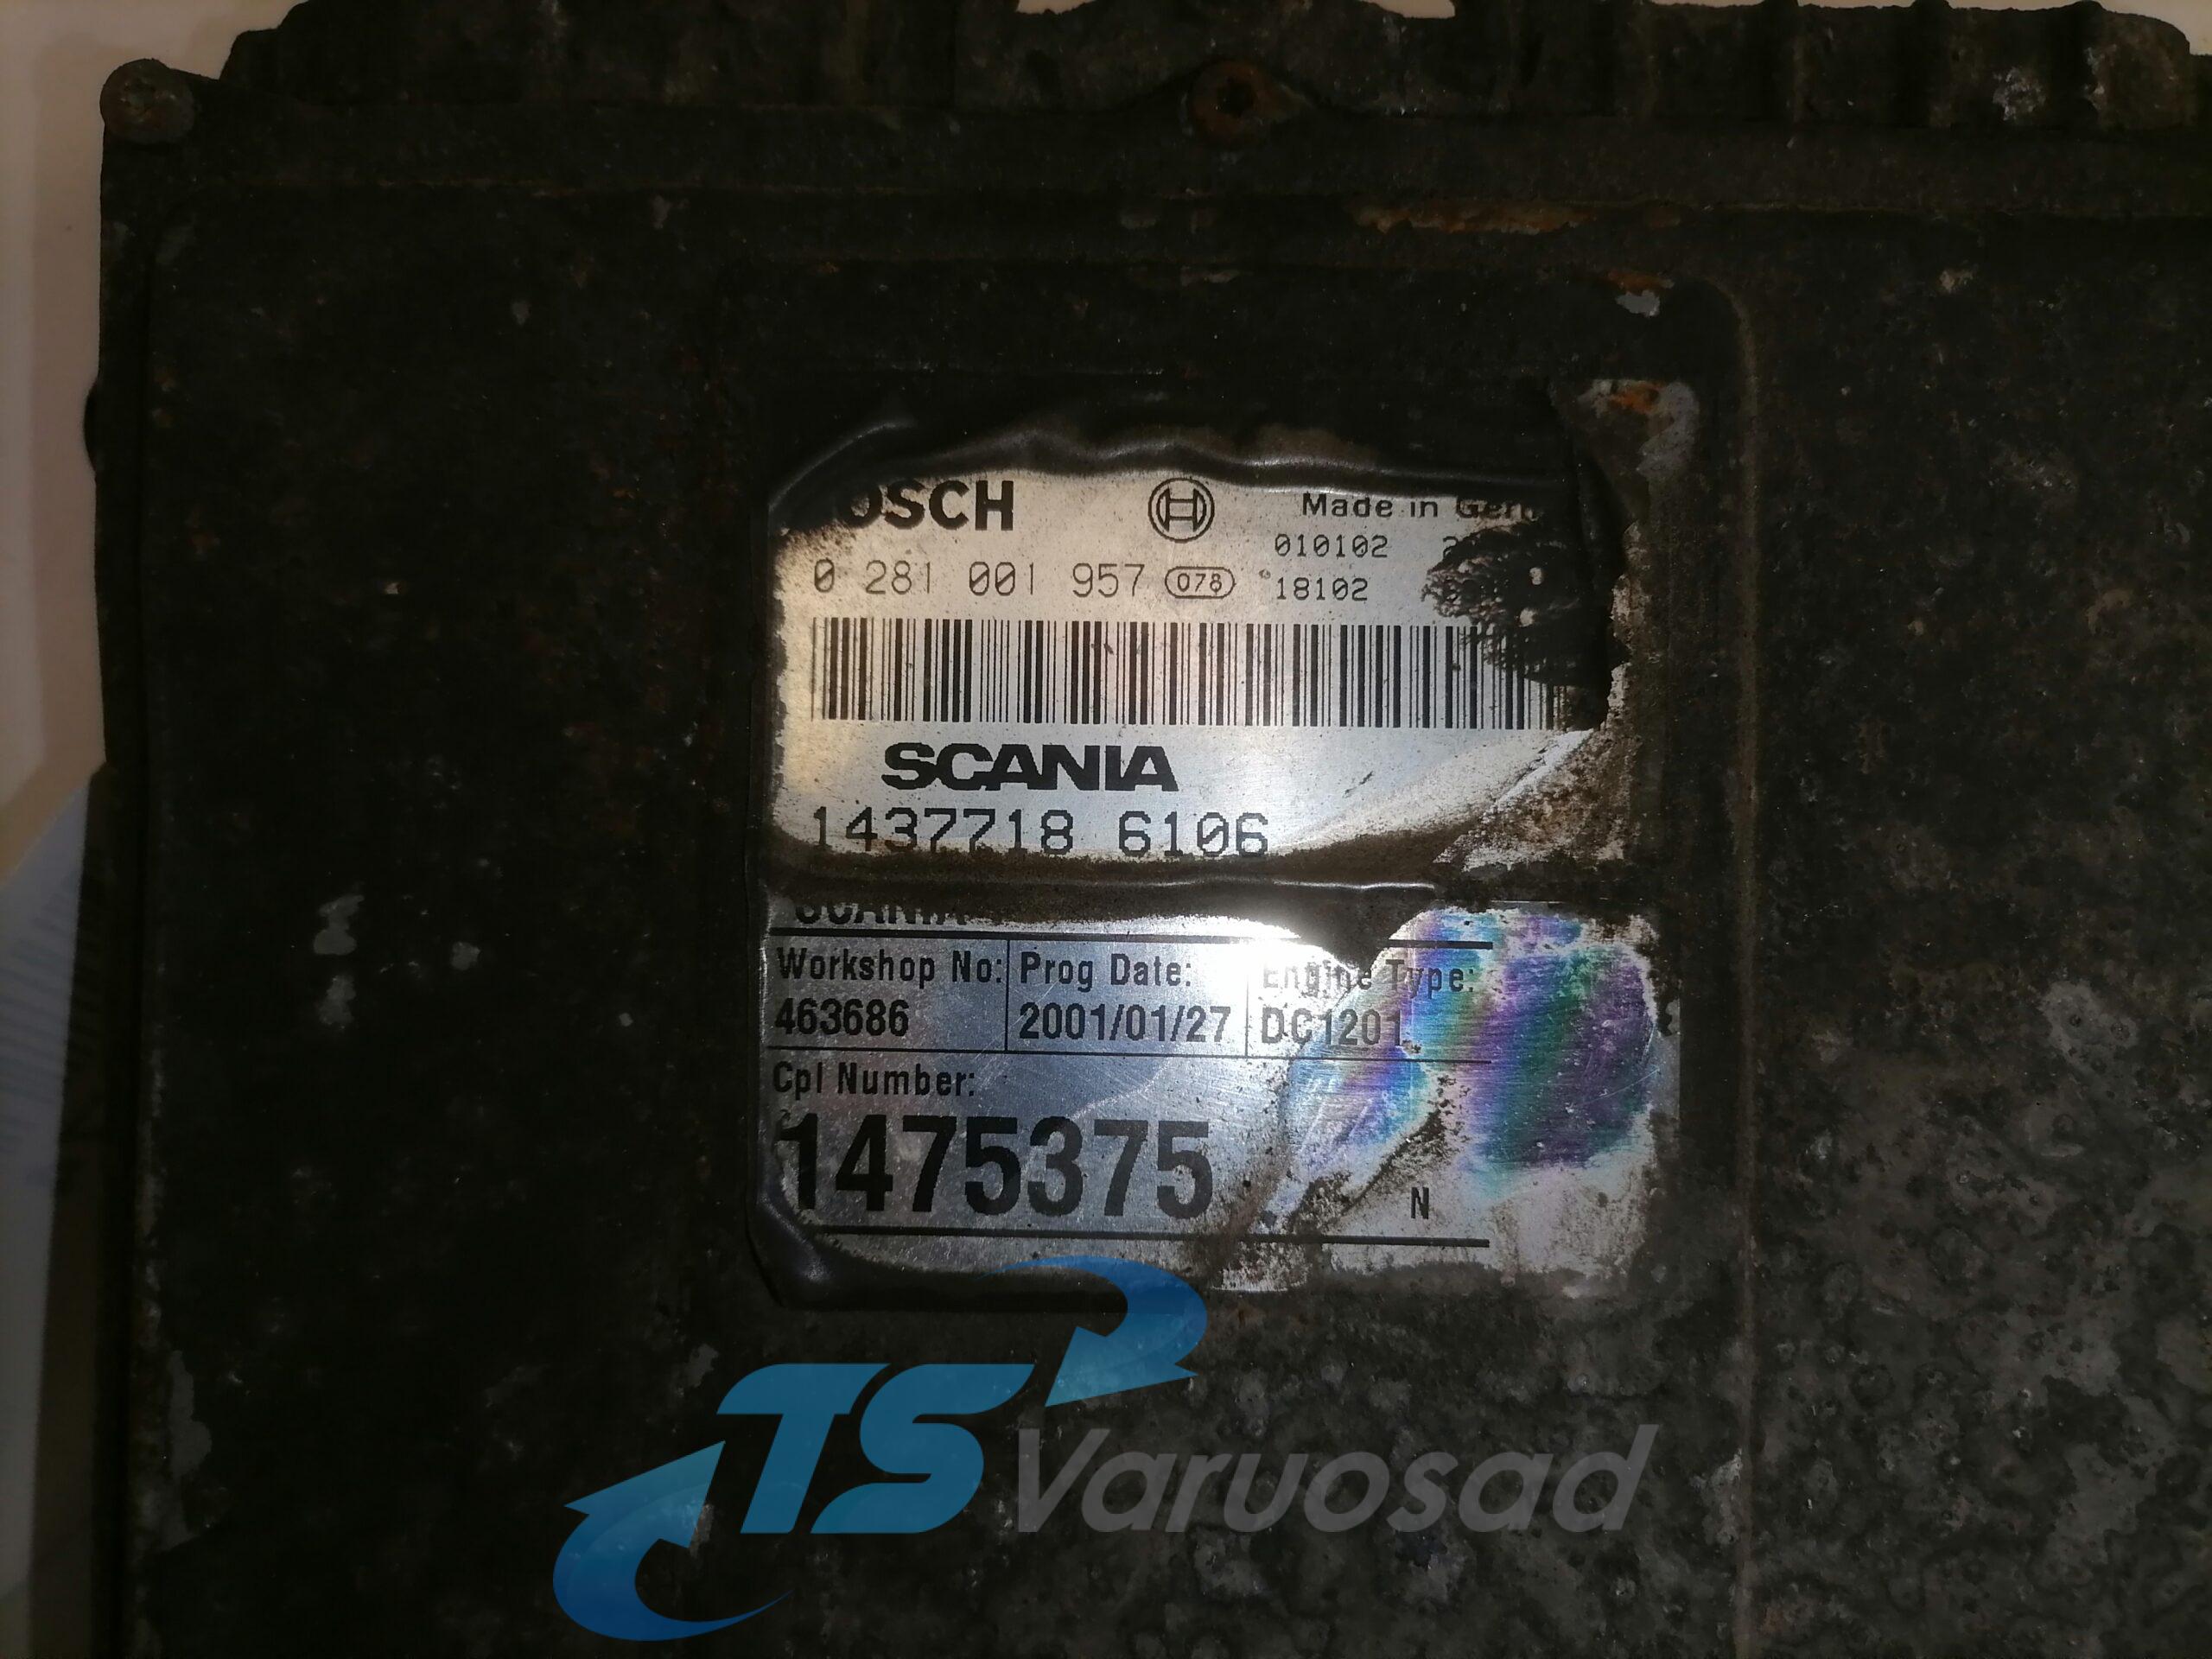 Scania EMS juhtplokk, DC1201